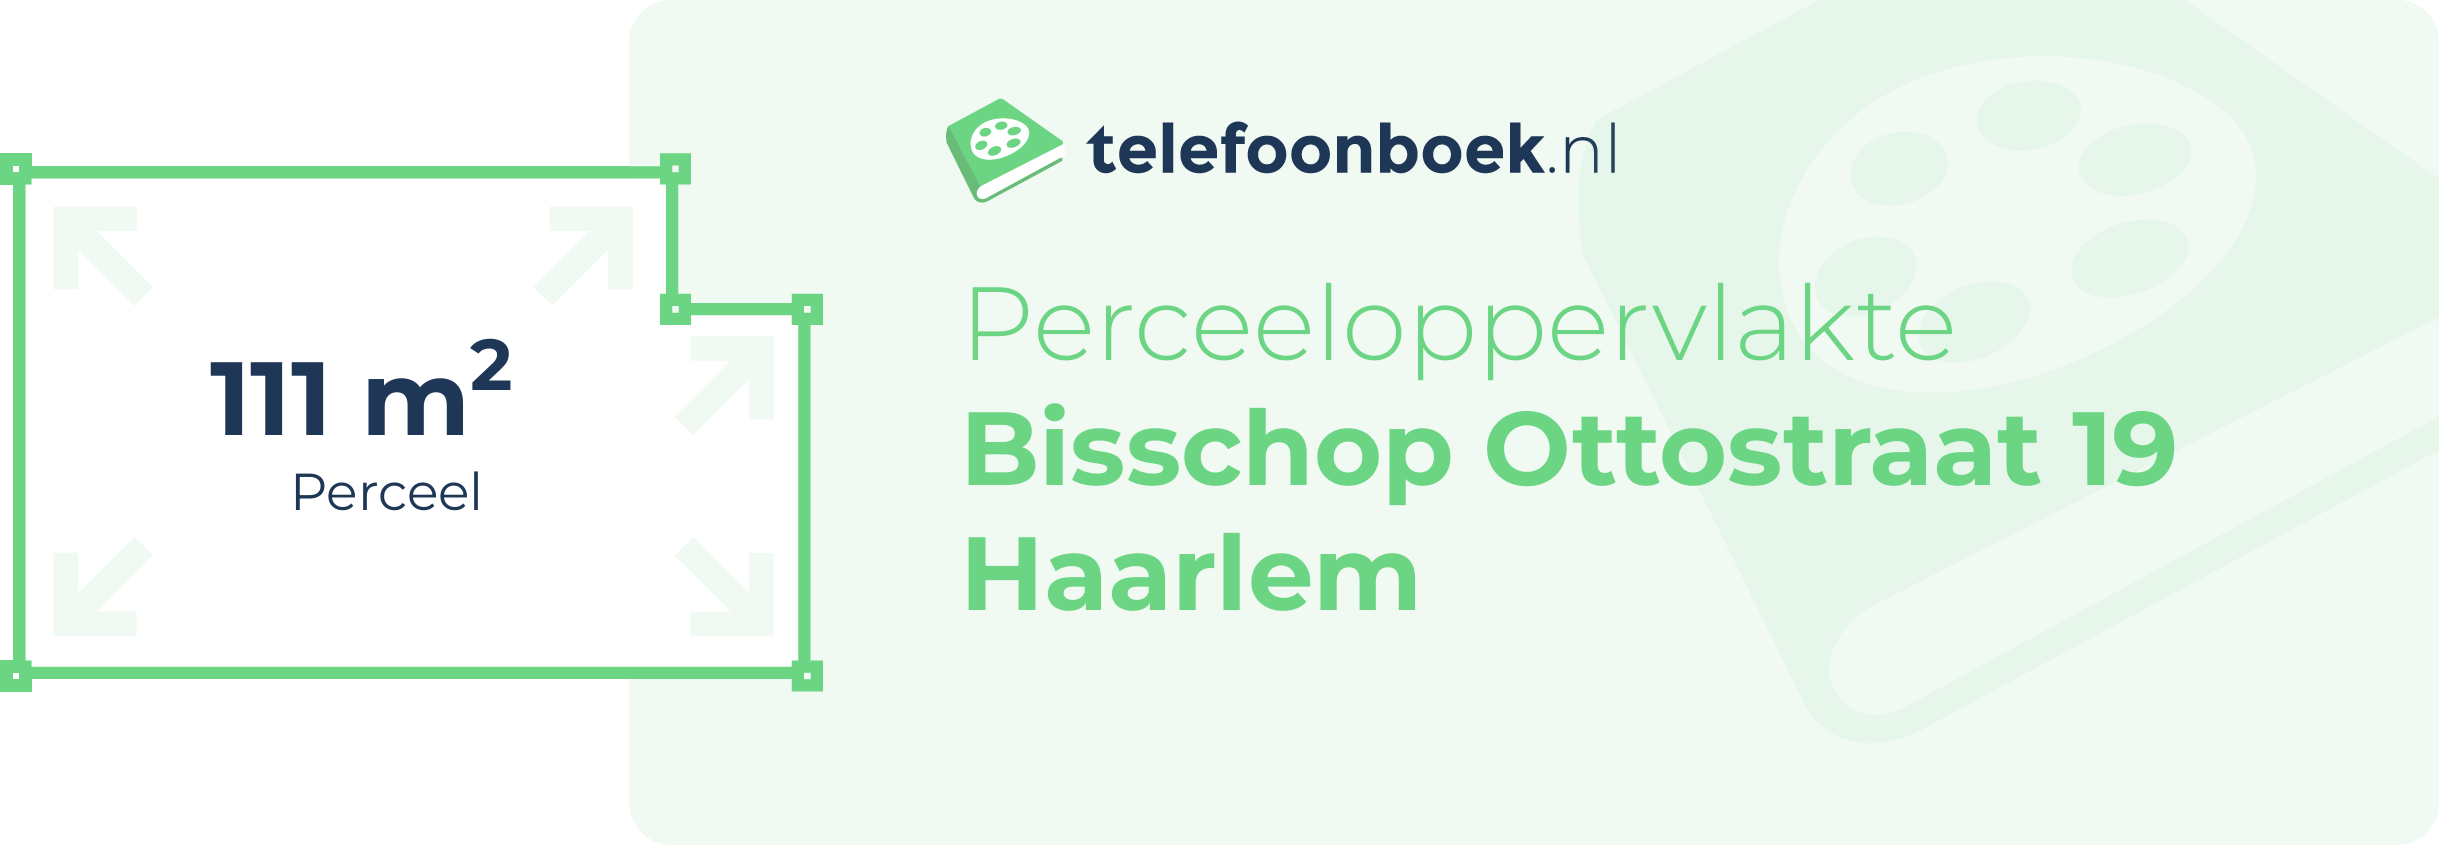 Perceeloppervlakte Bisschop Ottostraat 19 Haarlem